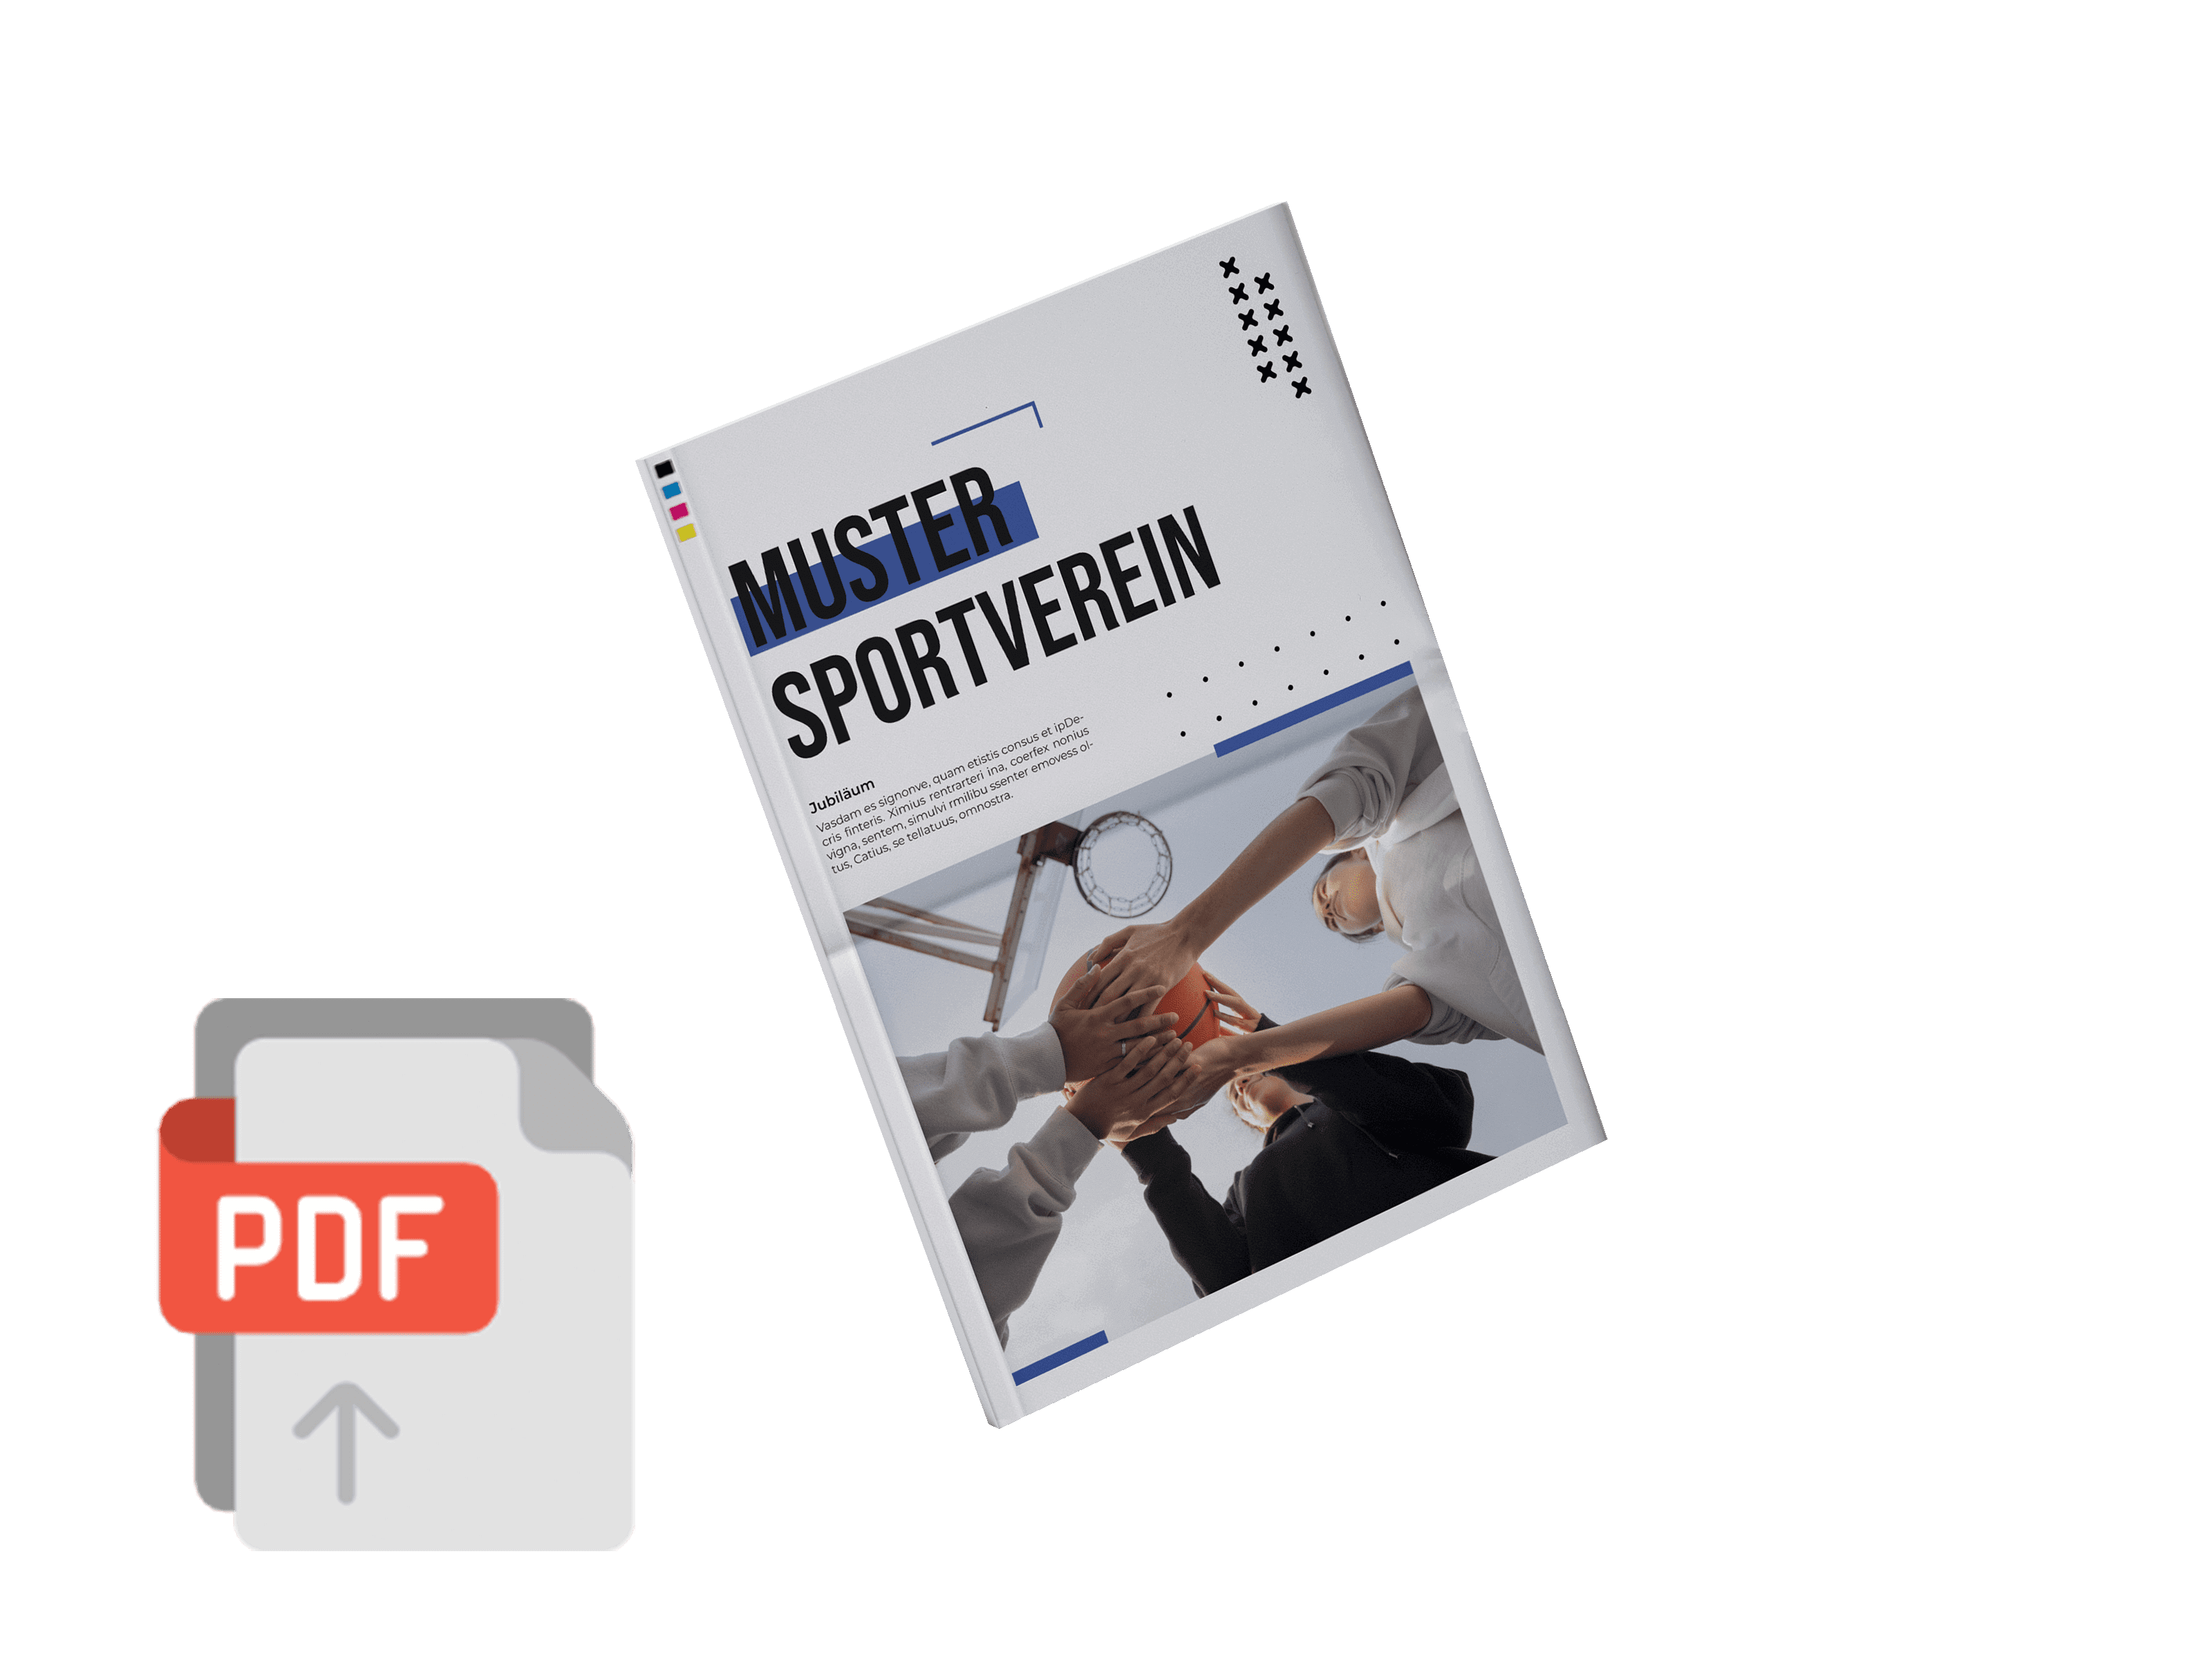 PDF als echte Vereinszeitung drucken lassen